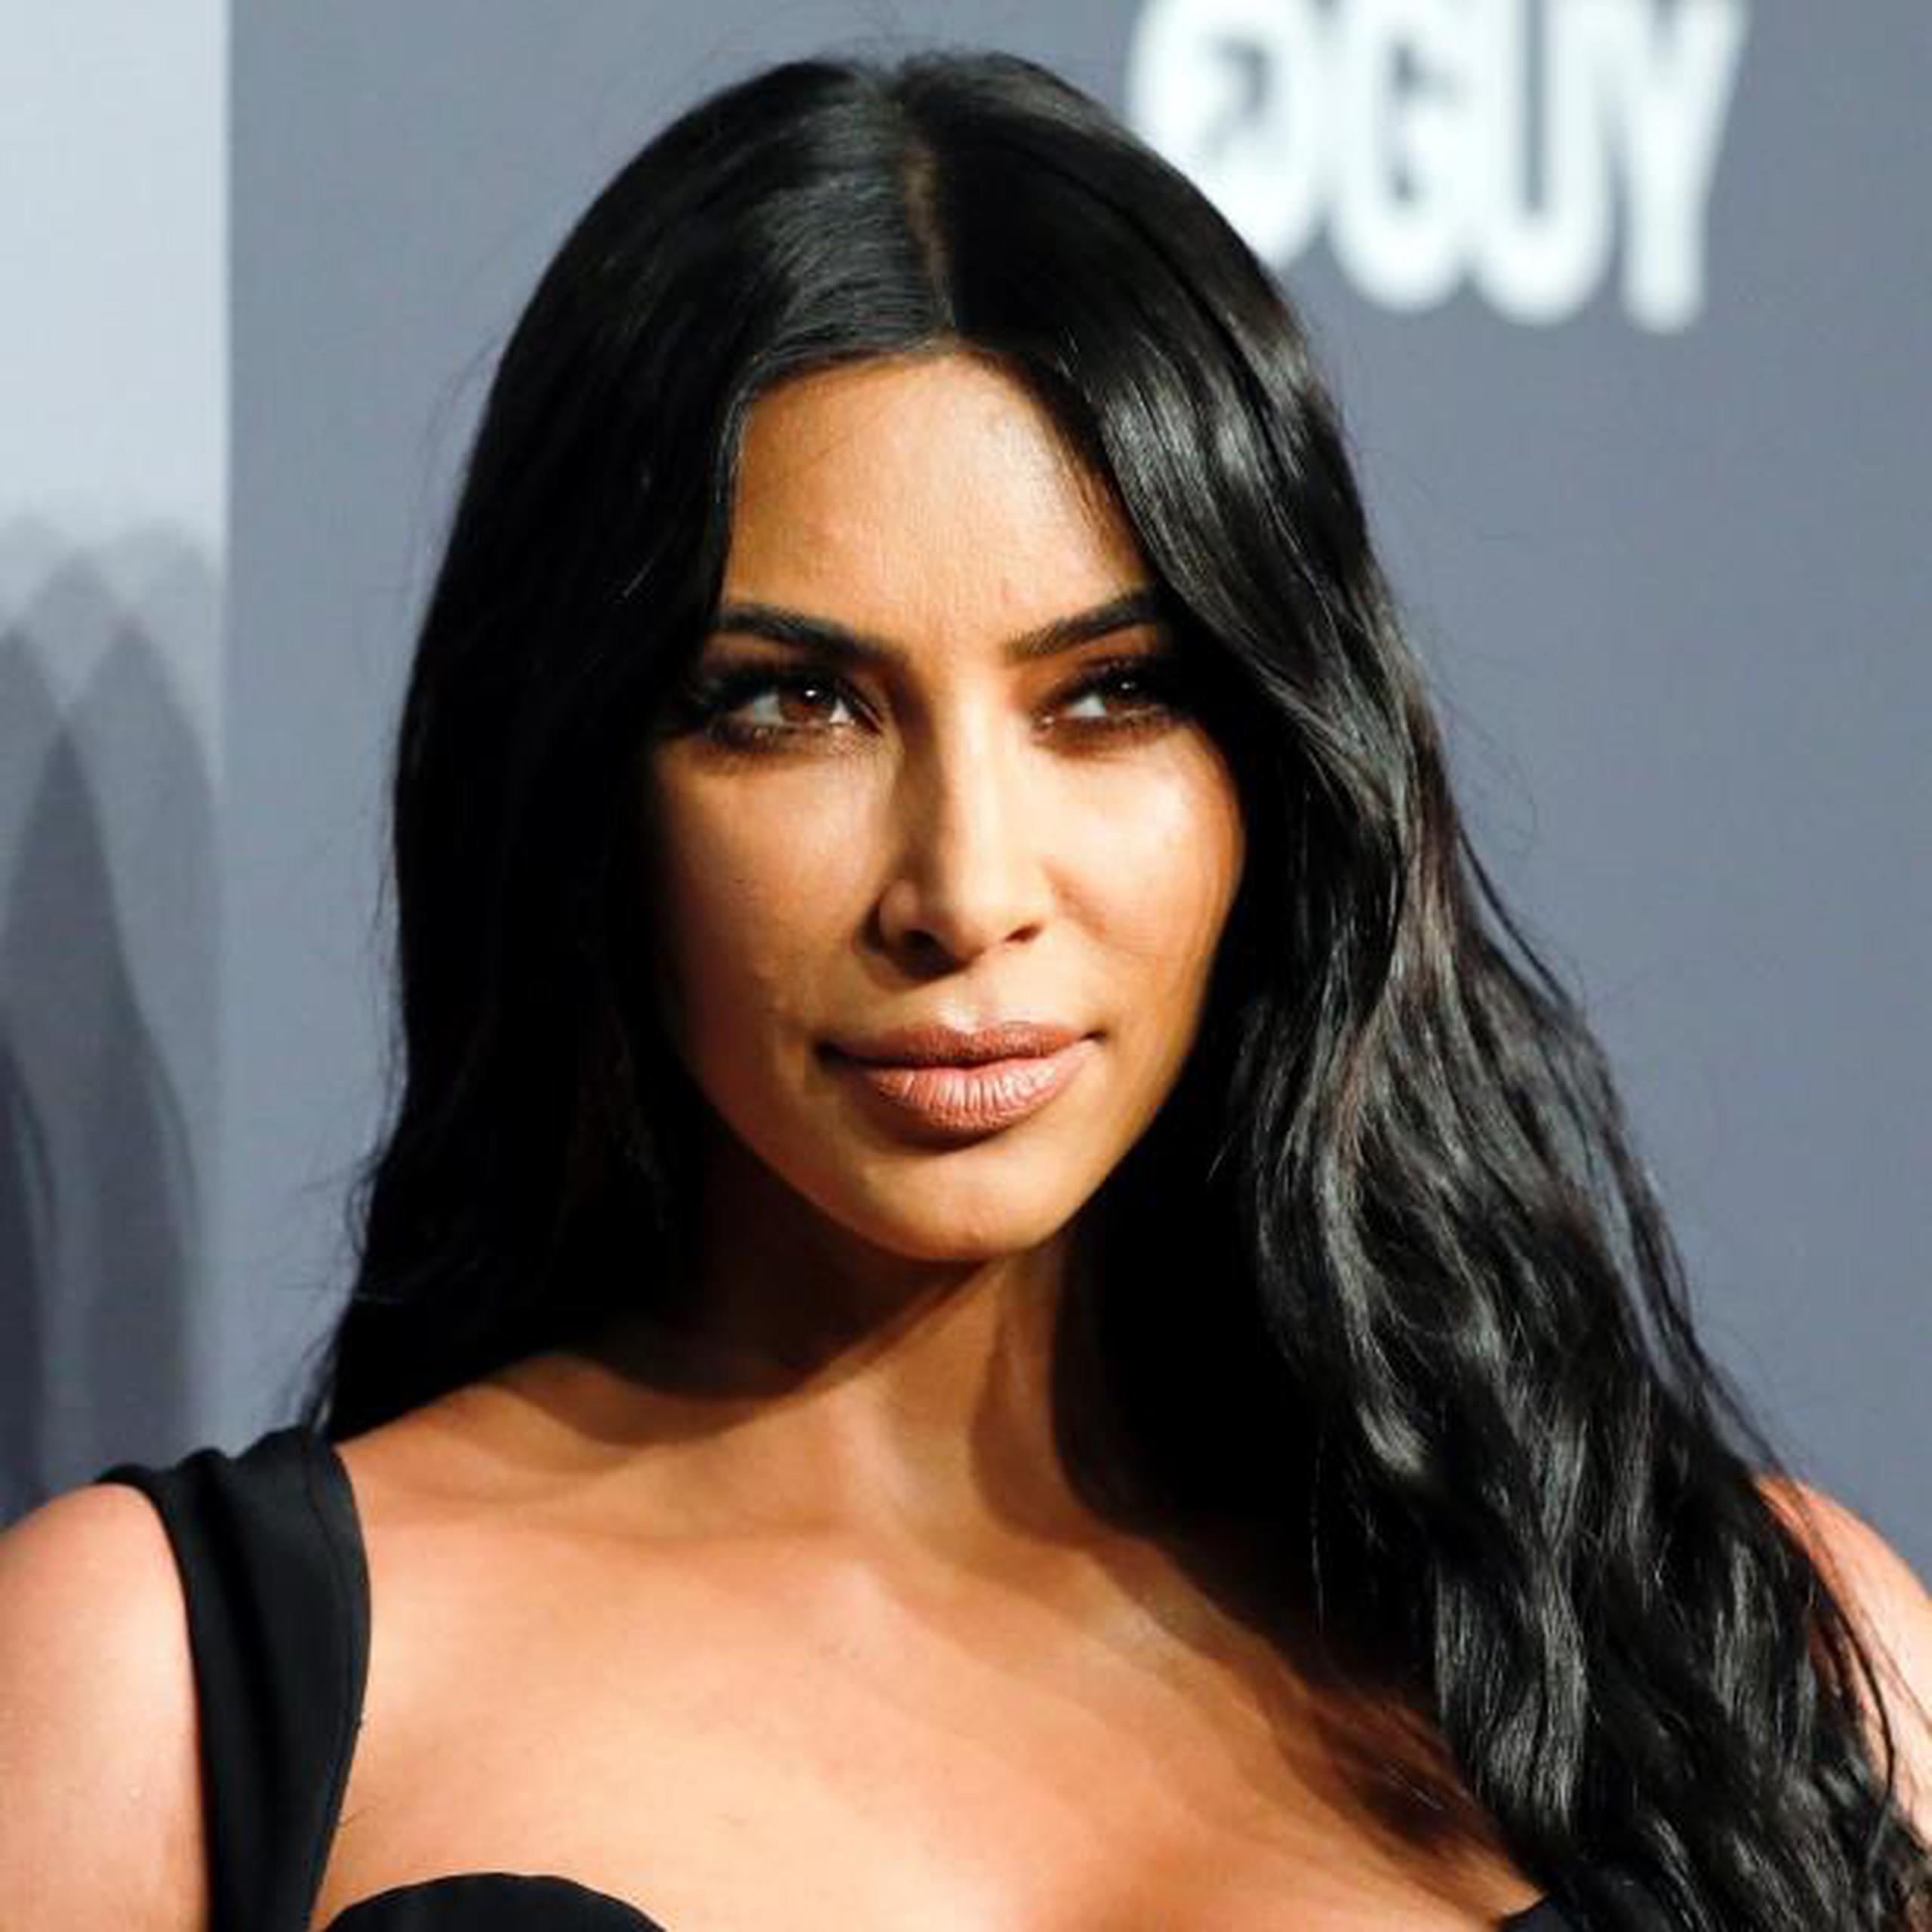 En el pasado, Kim Kardashian sufrió psoriasis y tuvo complicaciones en los embarazos con su marido Kanye West. (EFE)